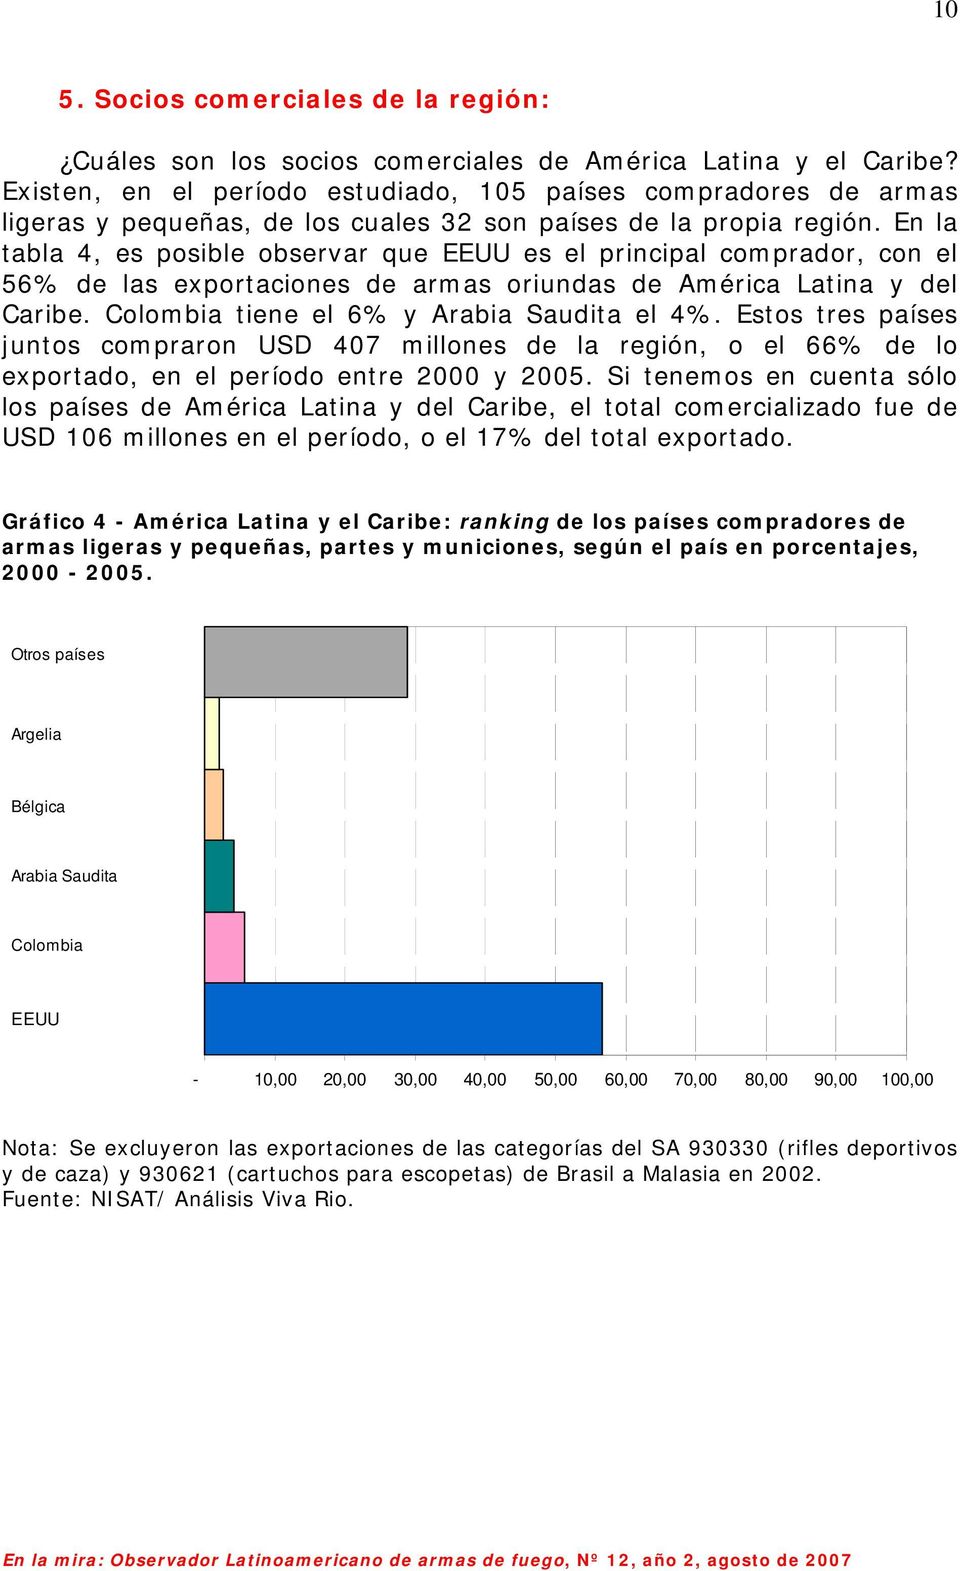 En la tabla 4, es posible observar que EEUU es el principal comprador, con el 56% de las exportaciones de armas oriundas de América Latina y del Caribe. Colombia tiene el 6% y Arabia Saudita el 4%.